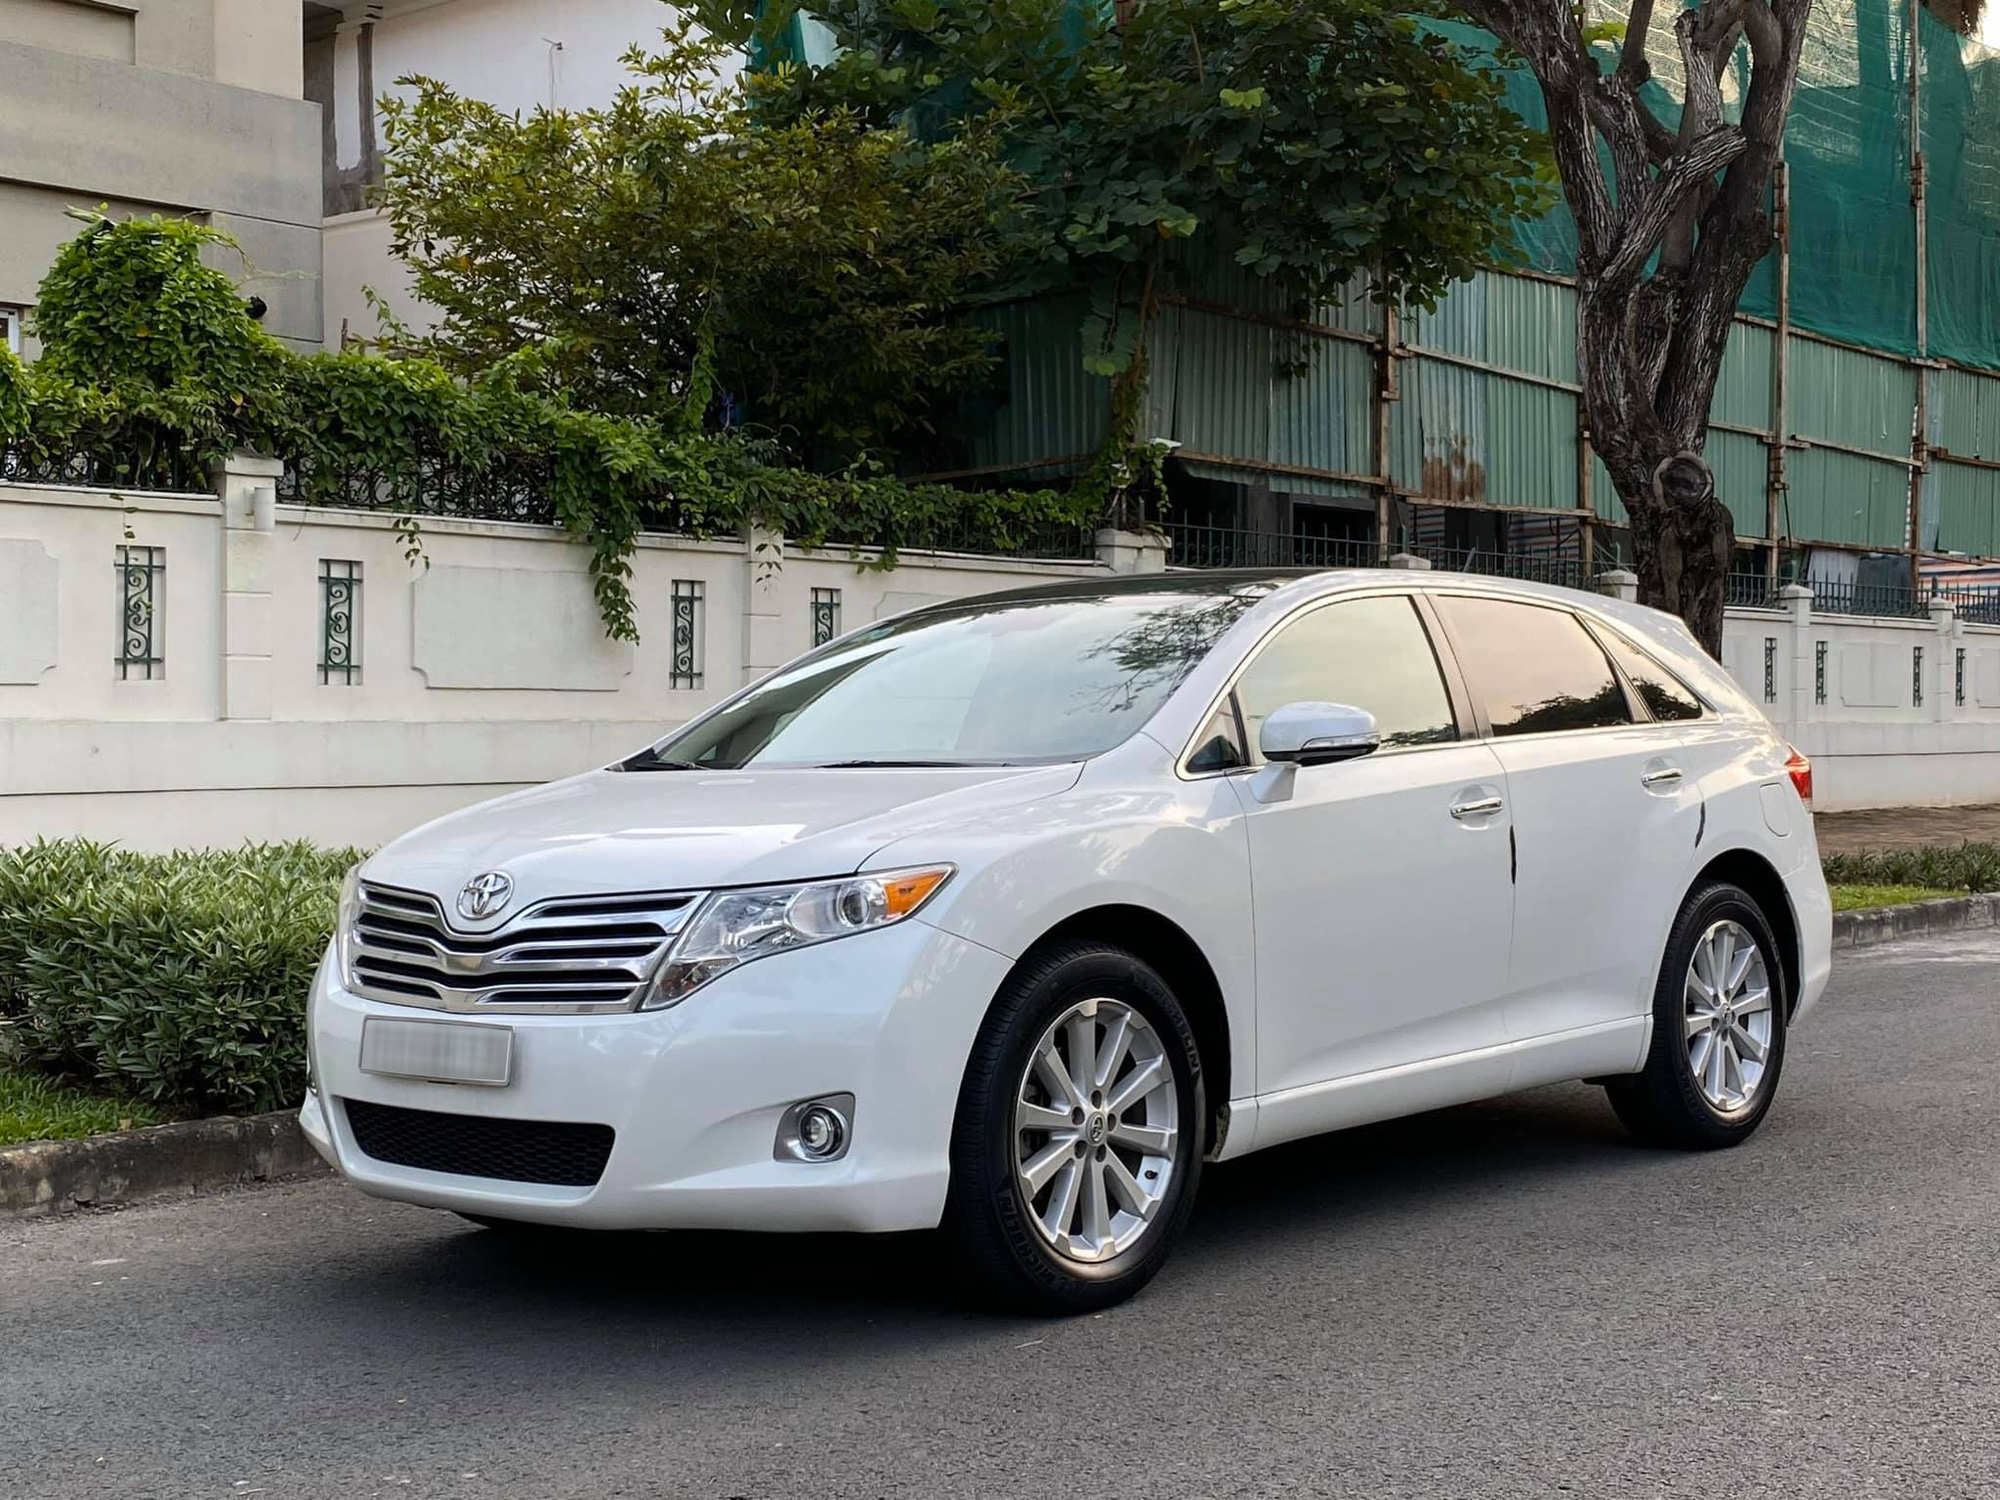 Toyota Venza 2009 giá 1 tỷ  hàng hot một thời tại Việt Nam  VnExpress